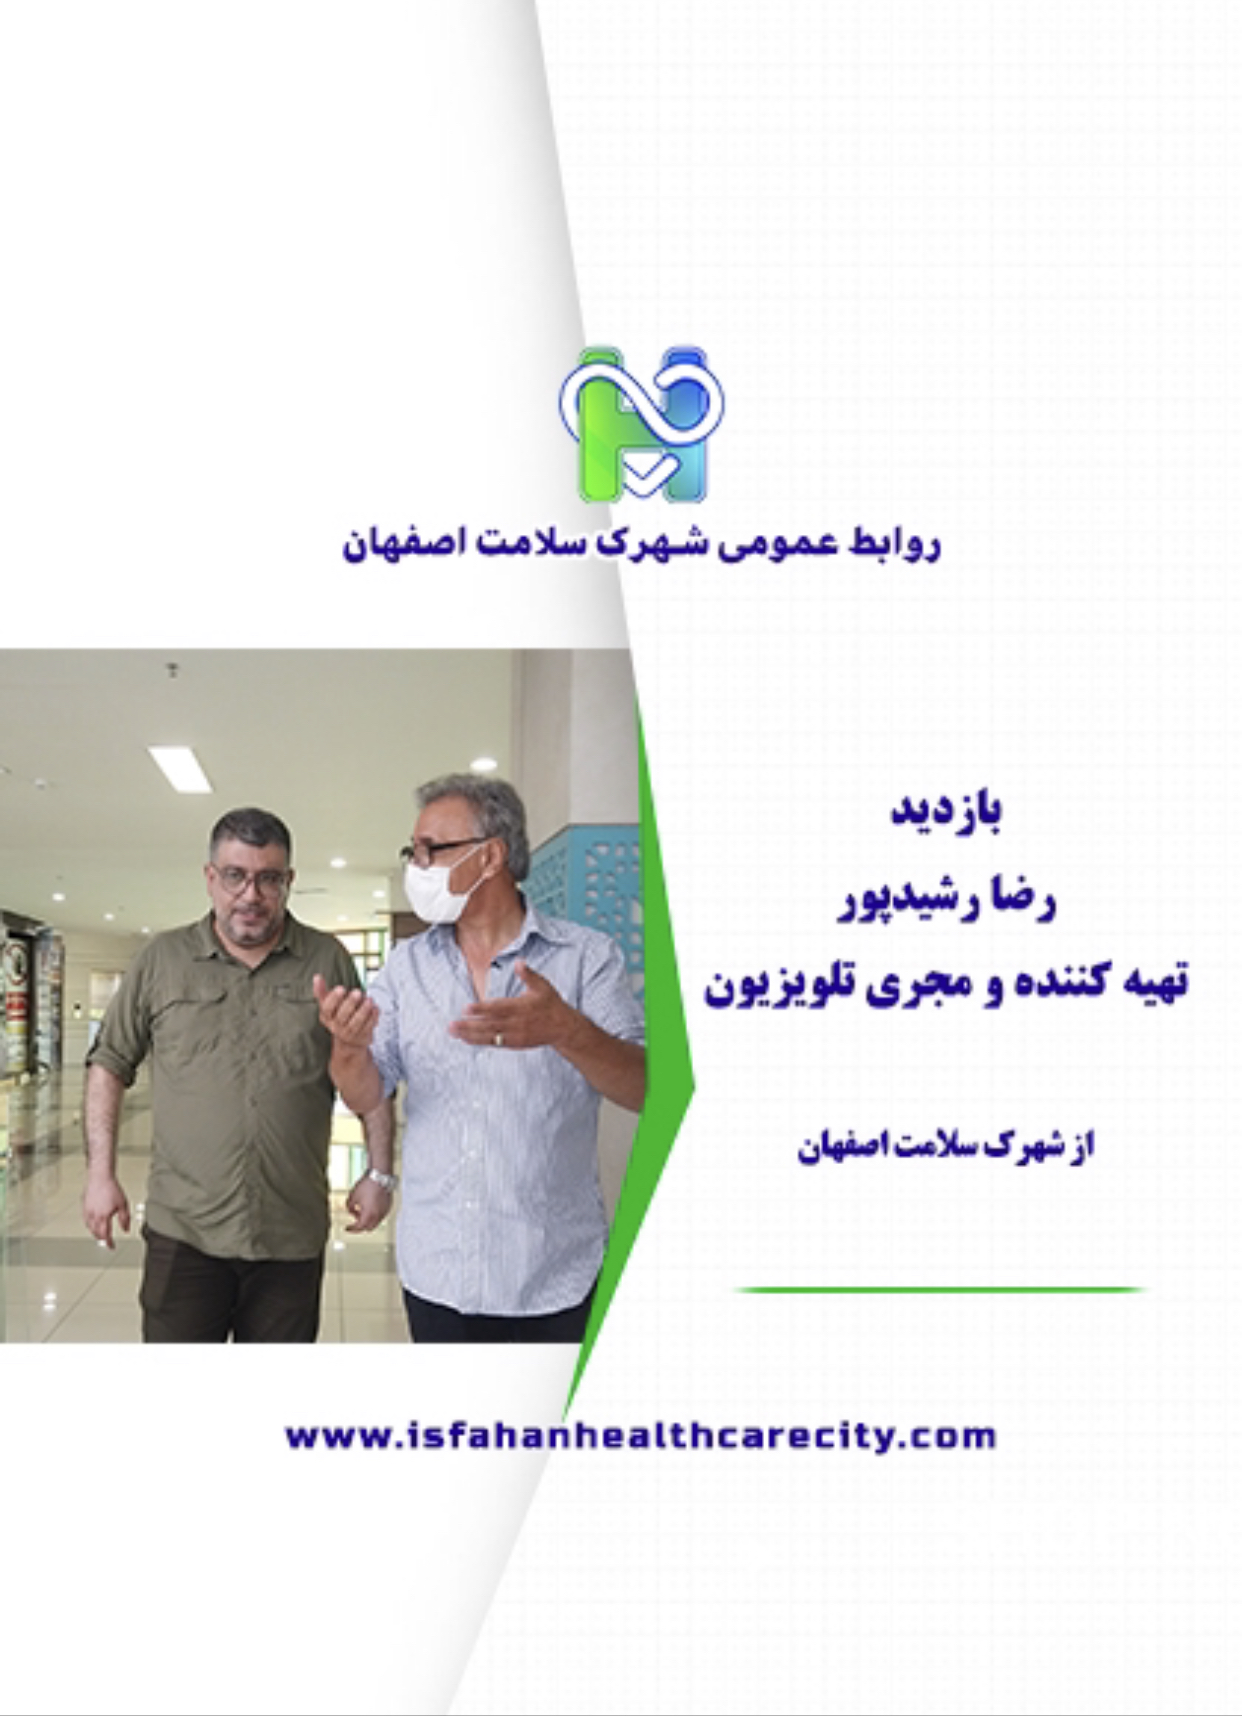 بازدید رضا رشید پور تهیه کننده و مجری تلویزیون از شهرک سلامت اصفهان